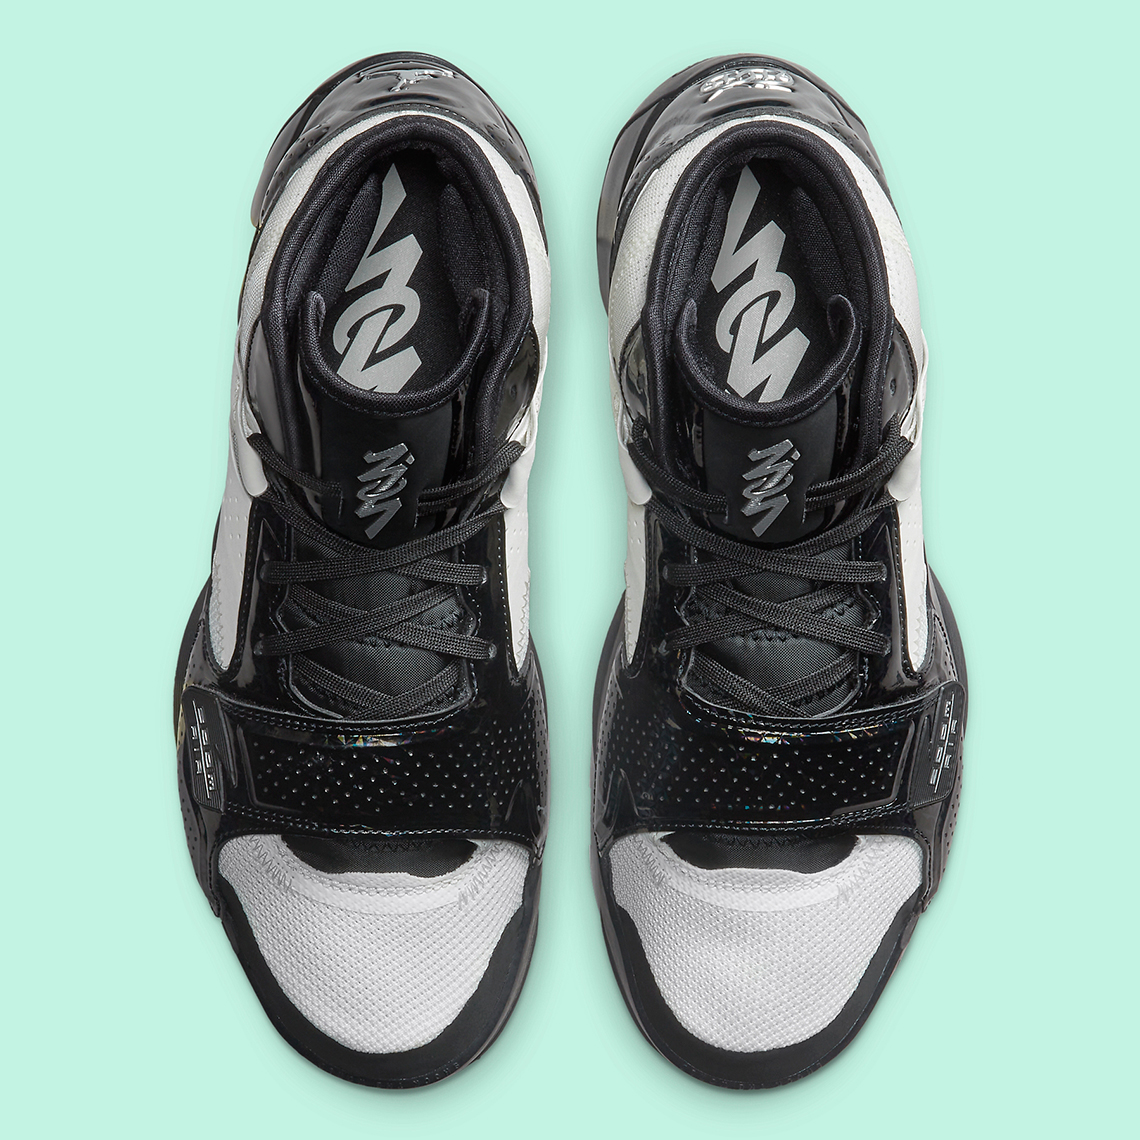 Air hydro Jordan 11 Retro "Concord Sketch" sneakers